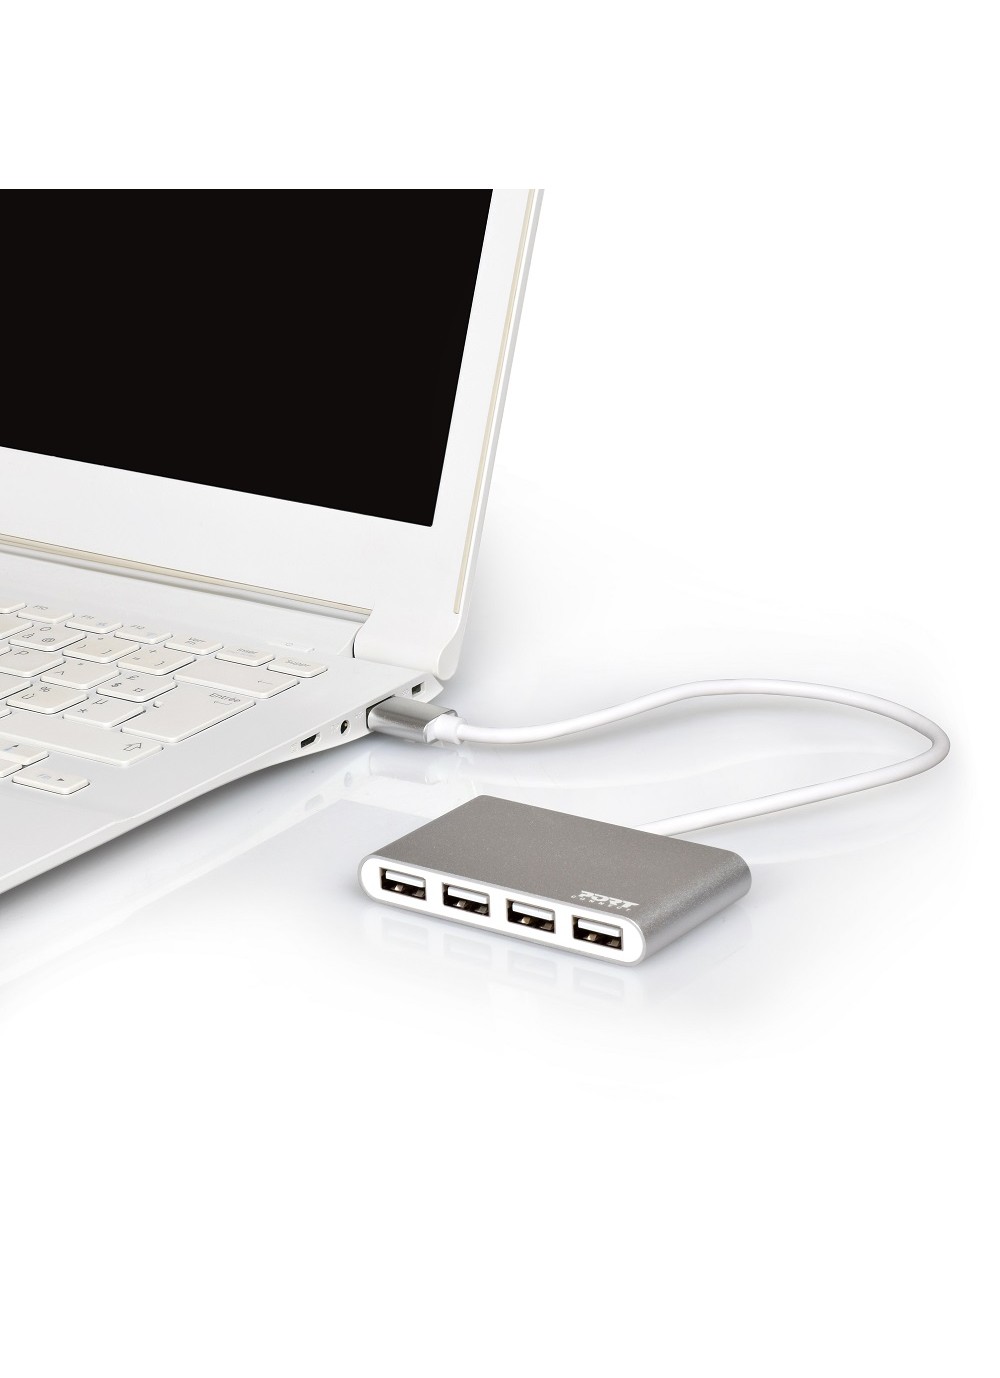 Port Connect Hub USB 4 PORTS 2.0 480 Mb/s